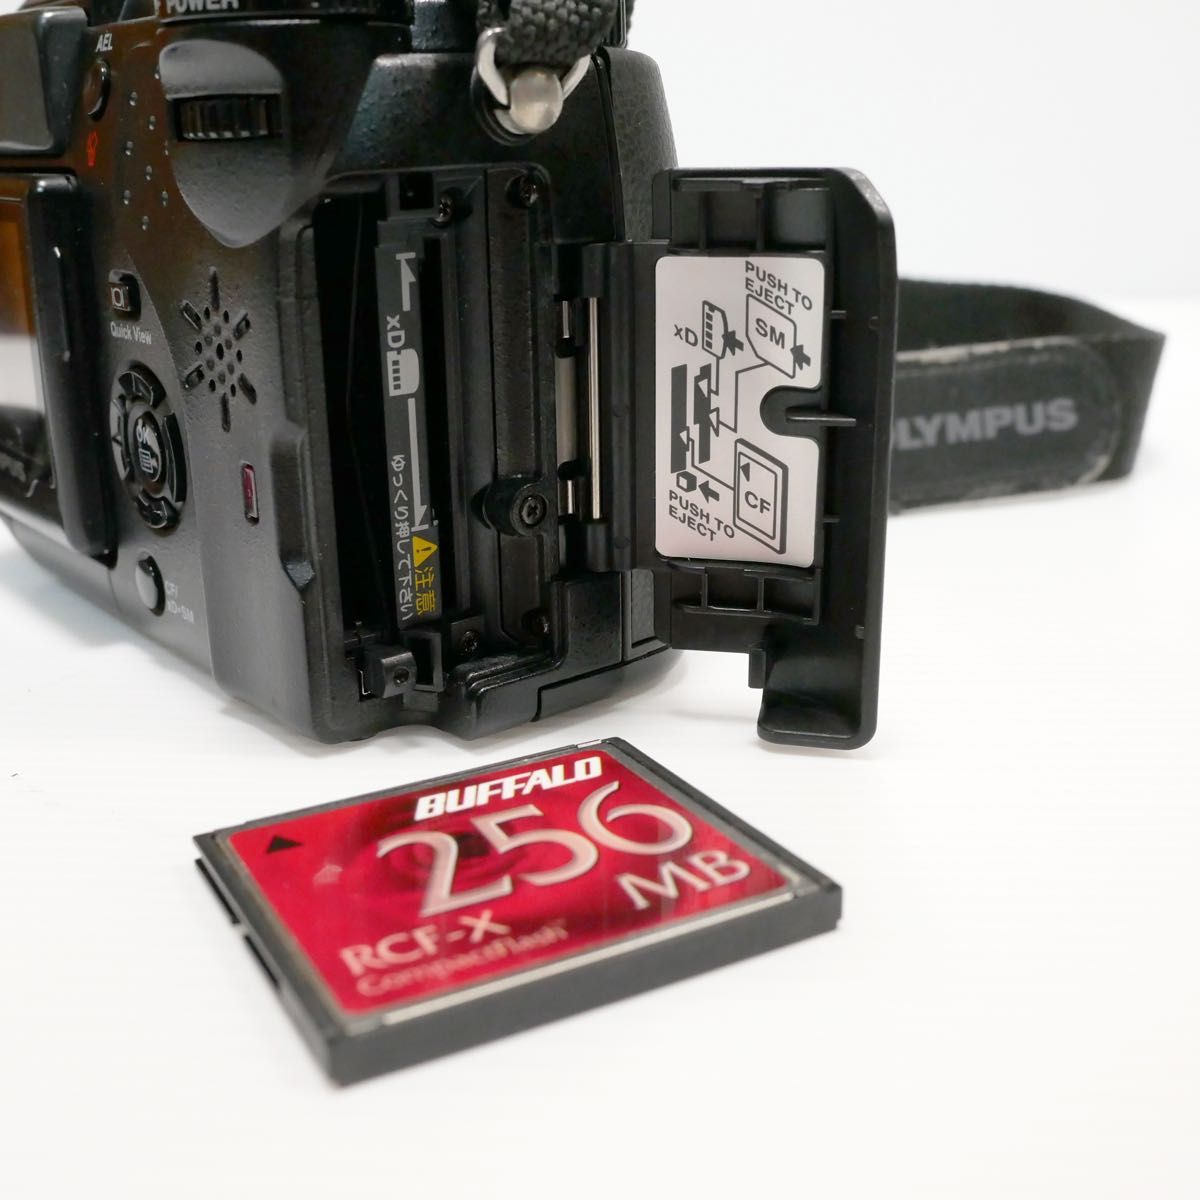 コンパクトデジタルカメラ (オールドデジカメ) オリンパス CAMEDIA C-5050